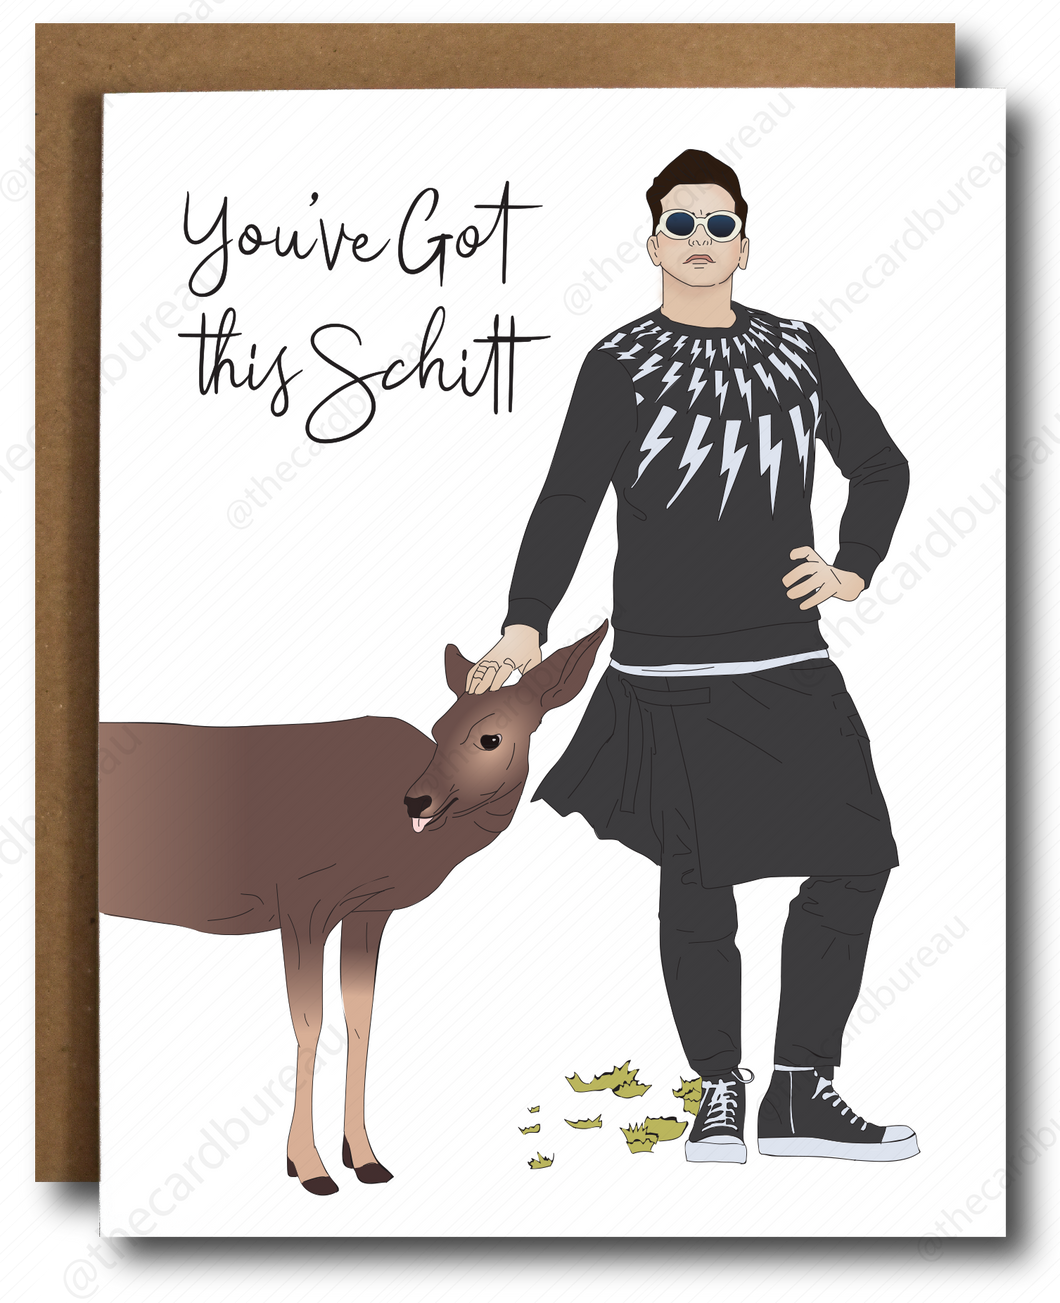 You've got this Schitt! Encouragement Card